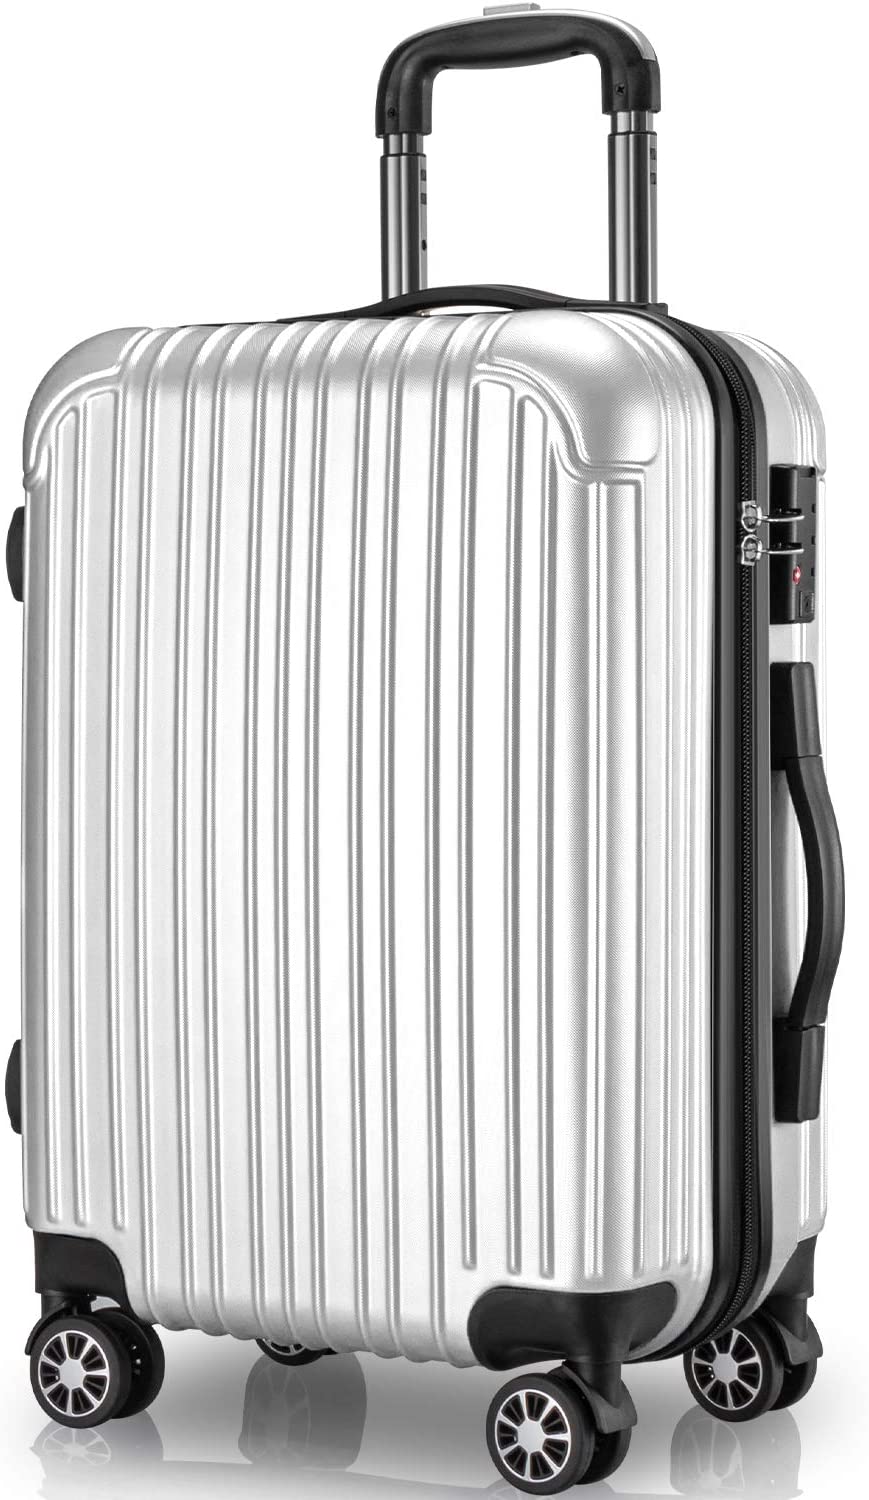 スーツケース 97L Lサイズ 7〜14泊 キャリーケース キャリーバッグ